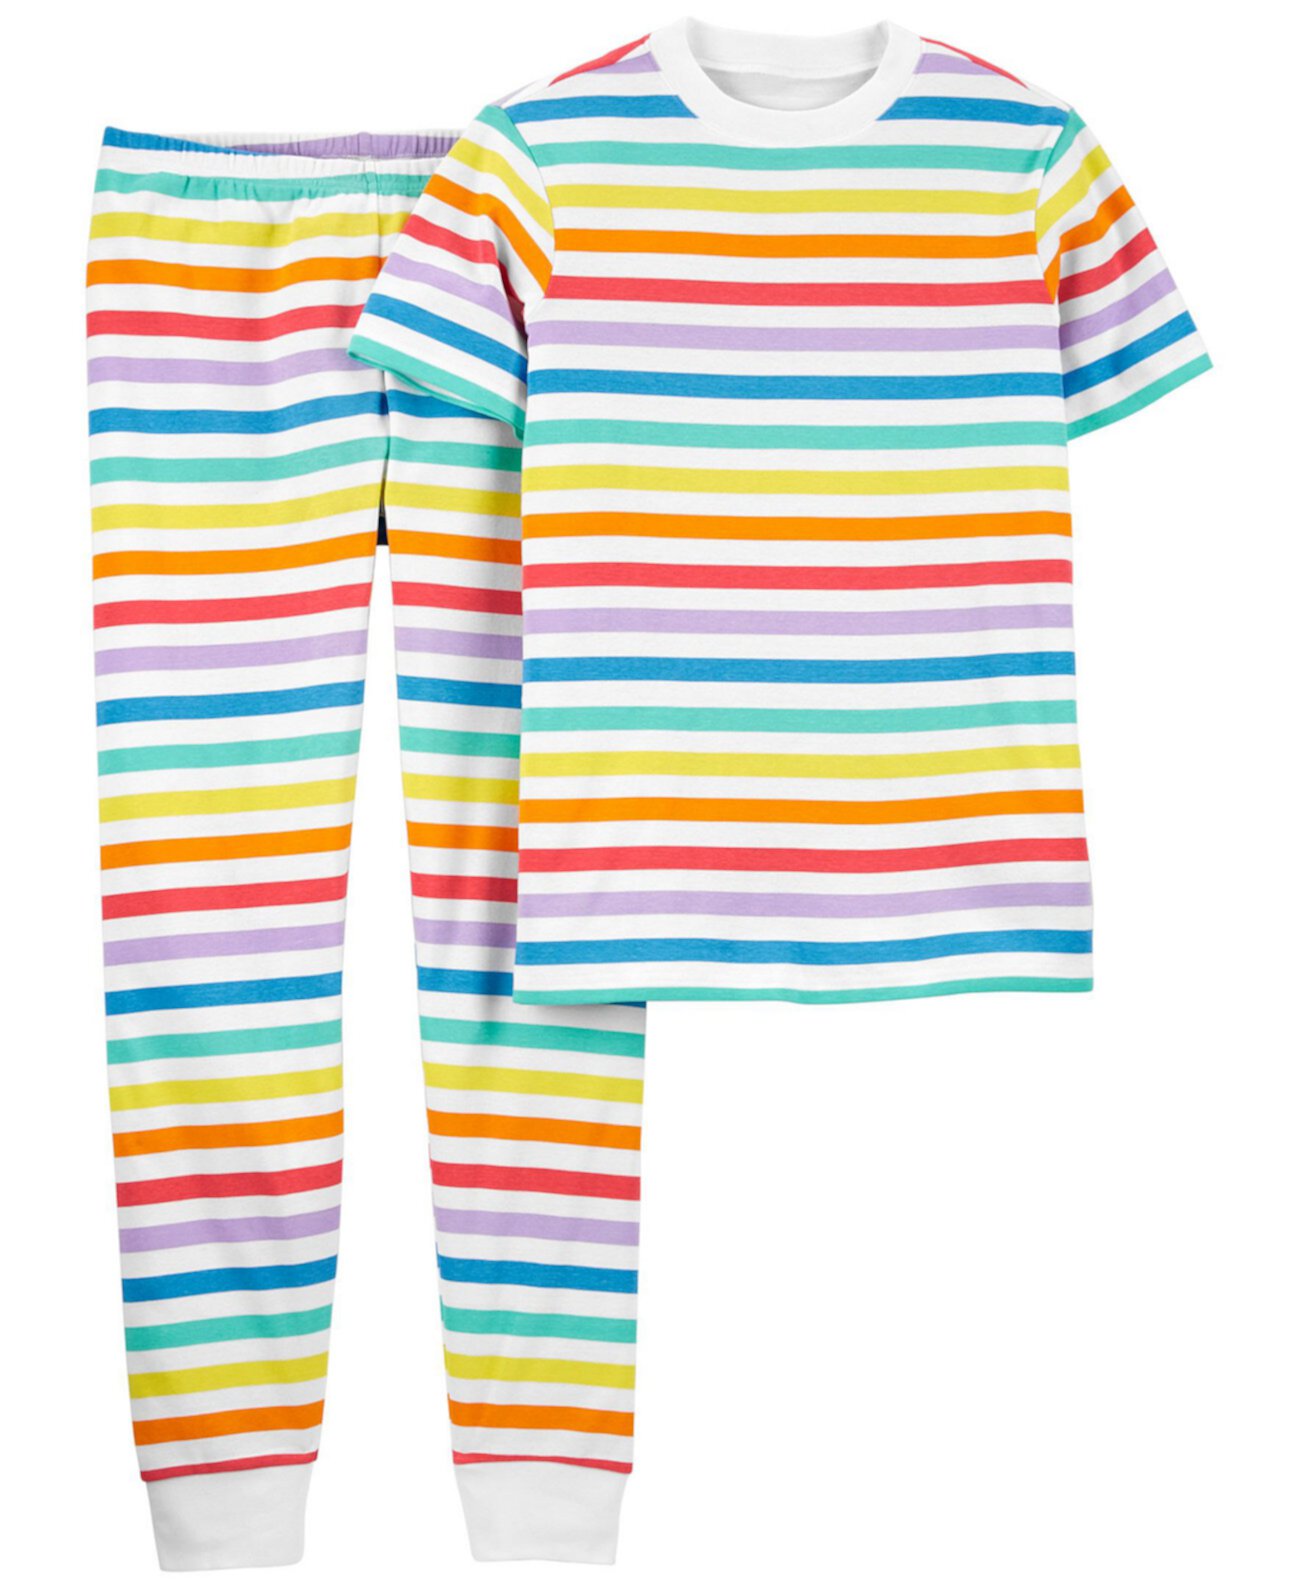 Взрослые унисекс 2 шт. Семейная пижама Rainbow Snug Fit Carter's